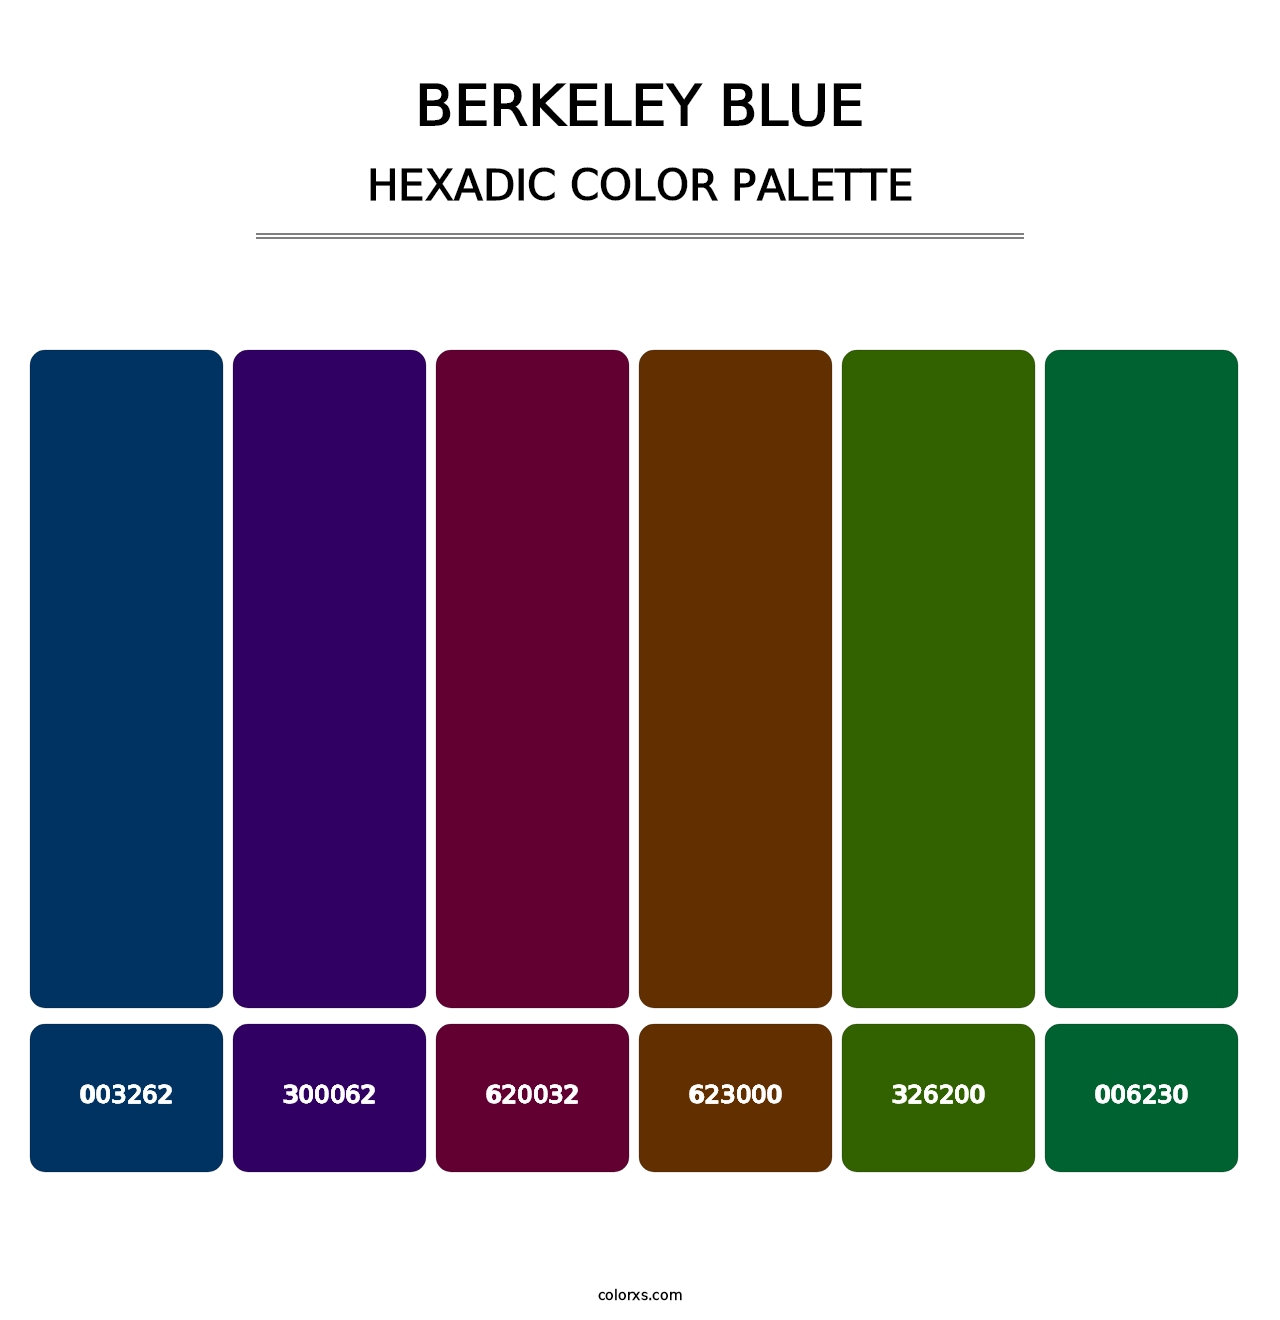 Berkeley Blue - Hexadic Color Palette